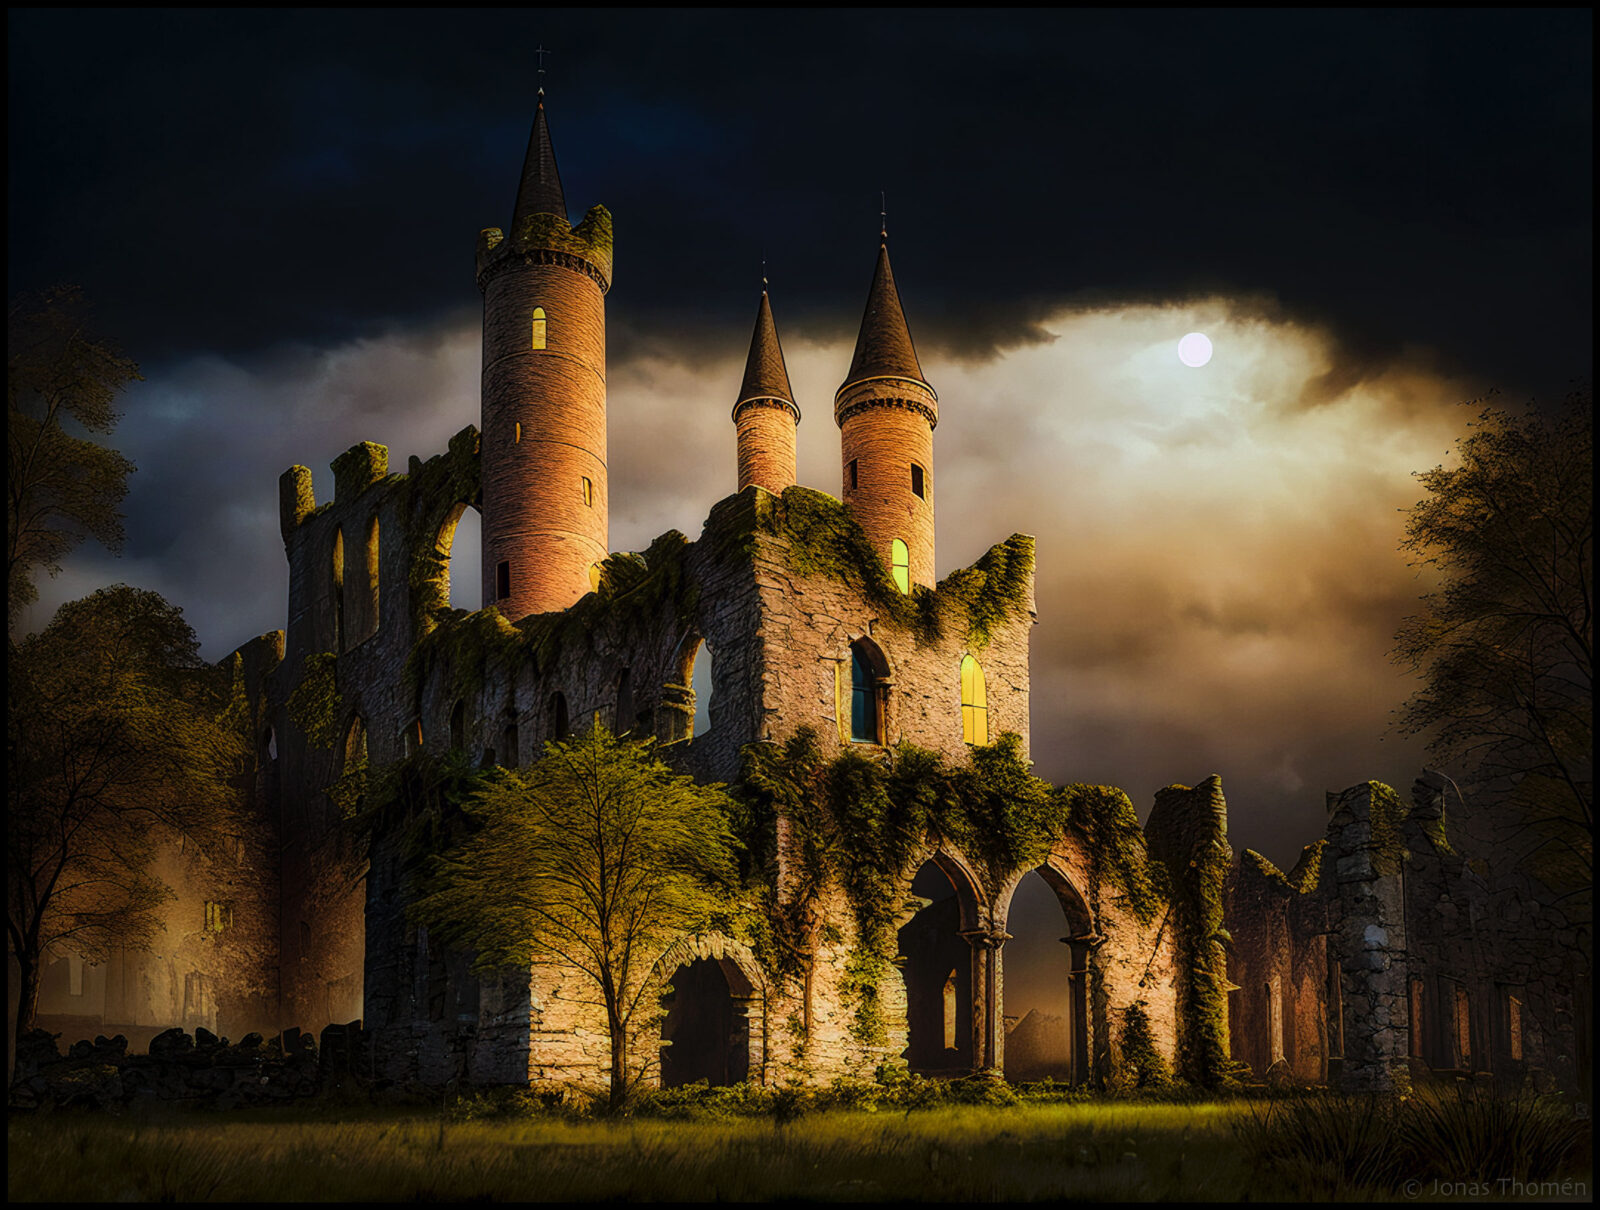 Slottsruin i månsken (Castle ruins in the moonlight)